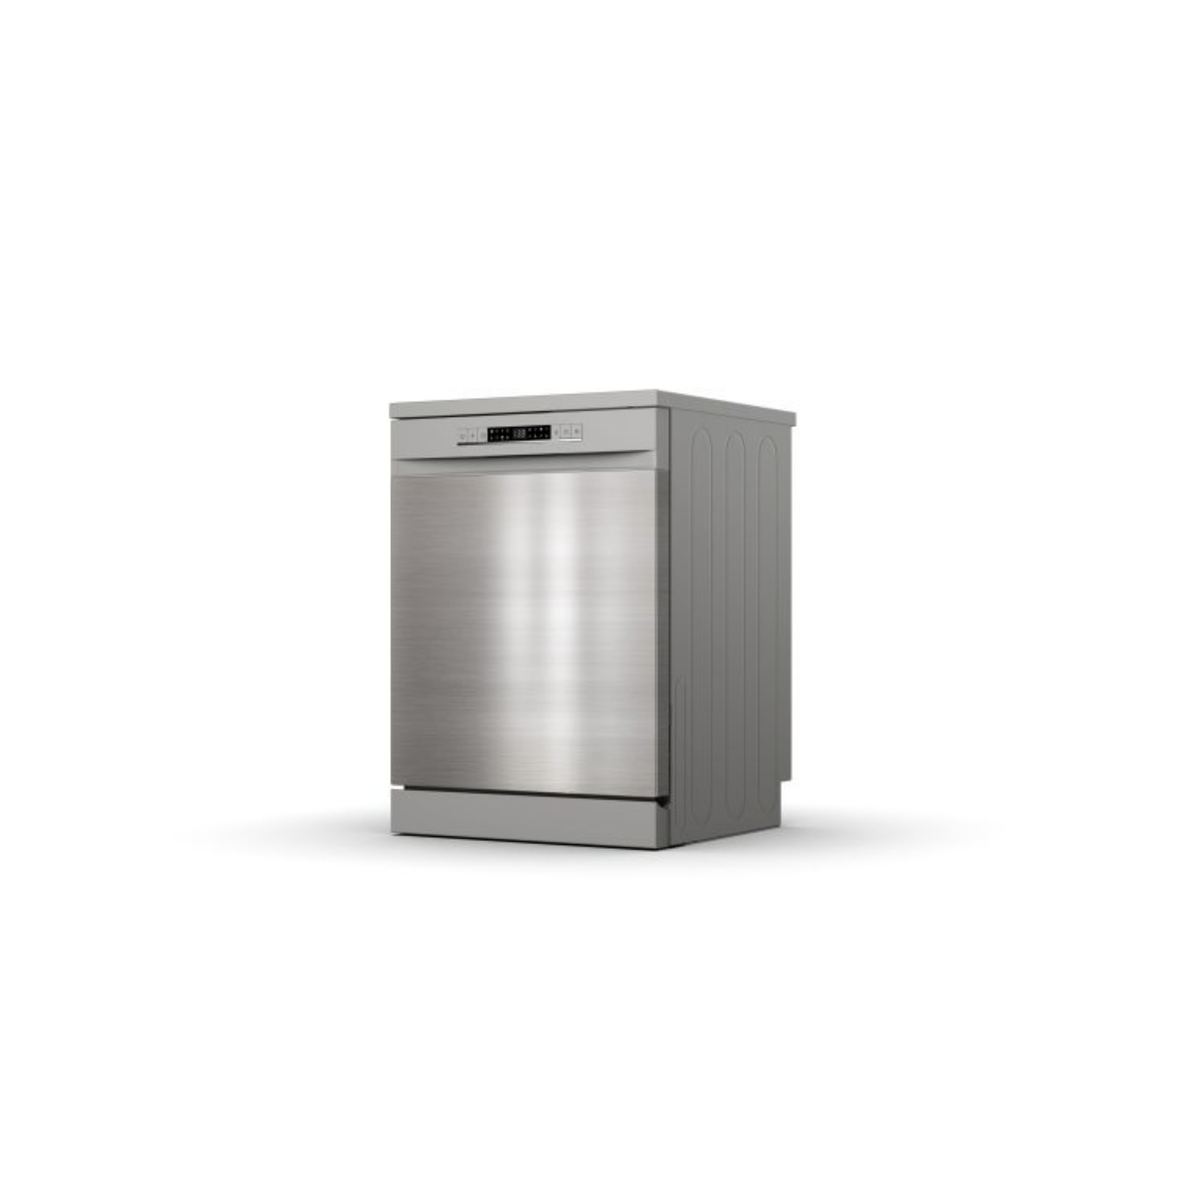 Hisense Freestanding Dishwasher, 60 cm, Silver, HS623E90X